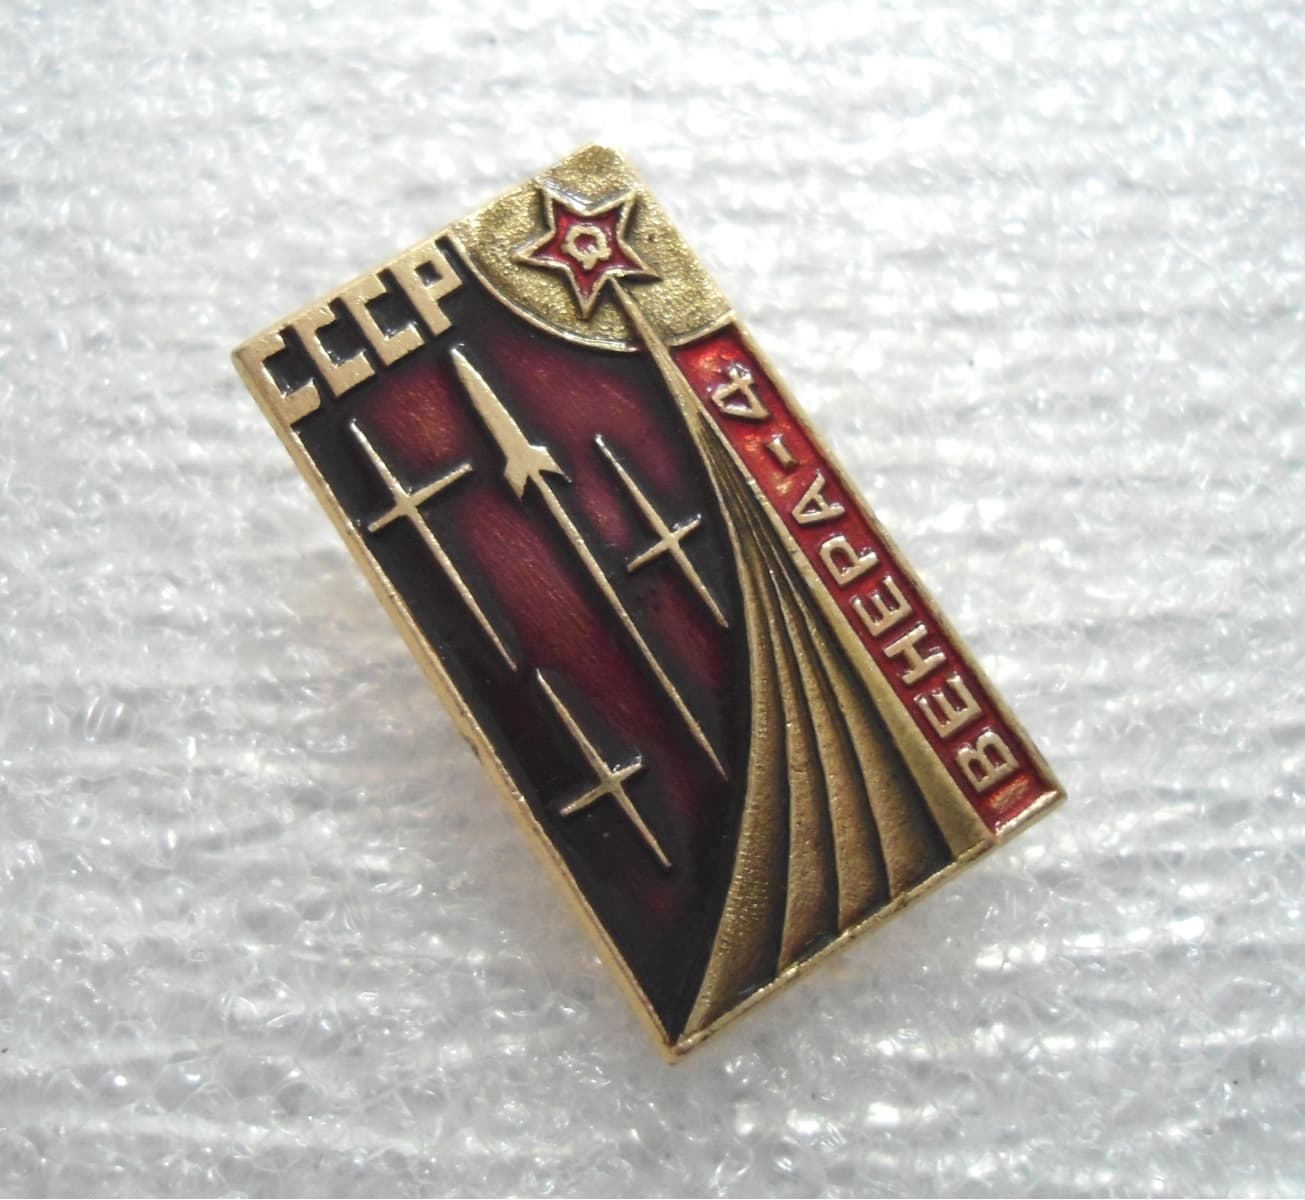 MARS 2 MARS 3 Spacecraft Space Russian Soviet USSR Metal Vintage Pin Badge 